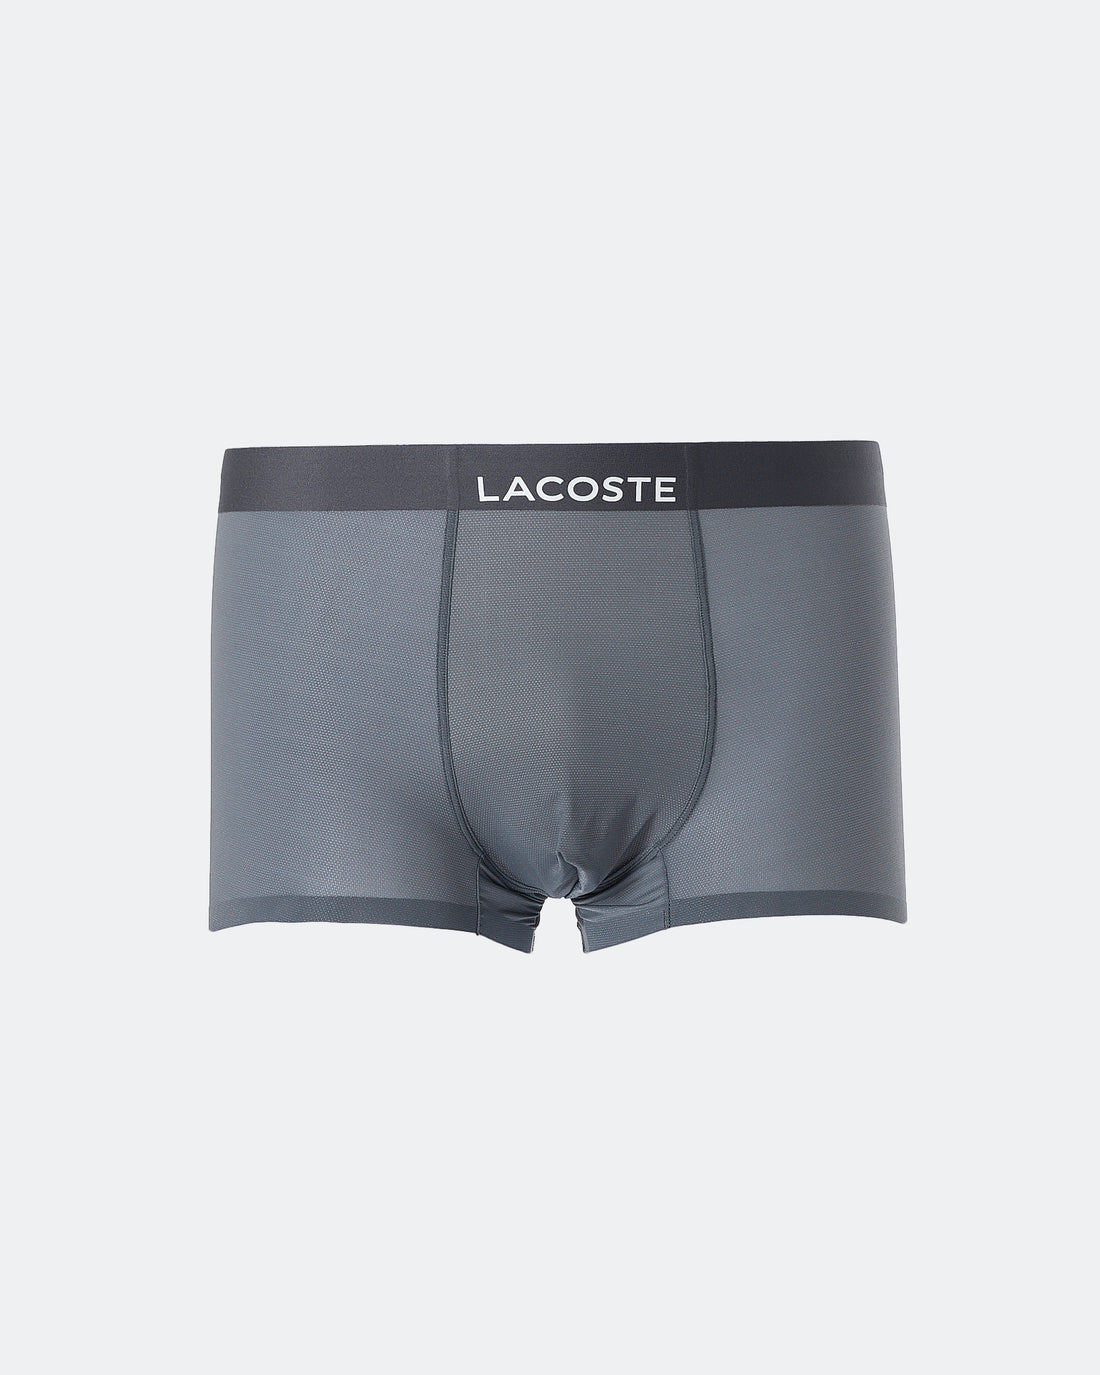 LAC Light Weight Men Dark Grey Underwear 5.90